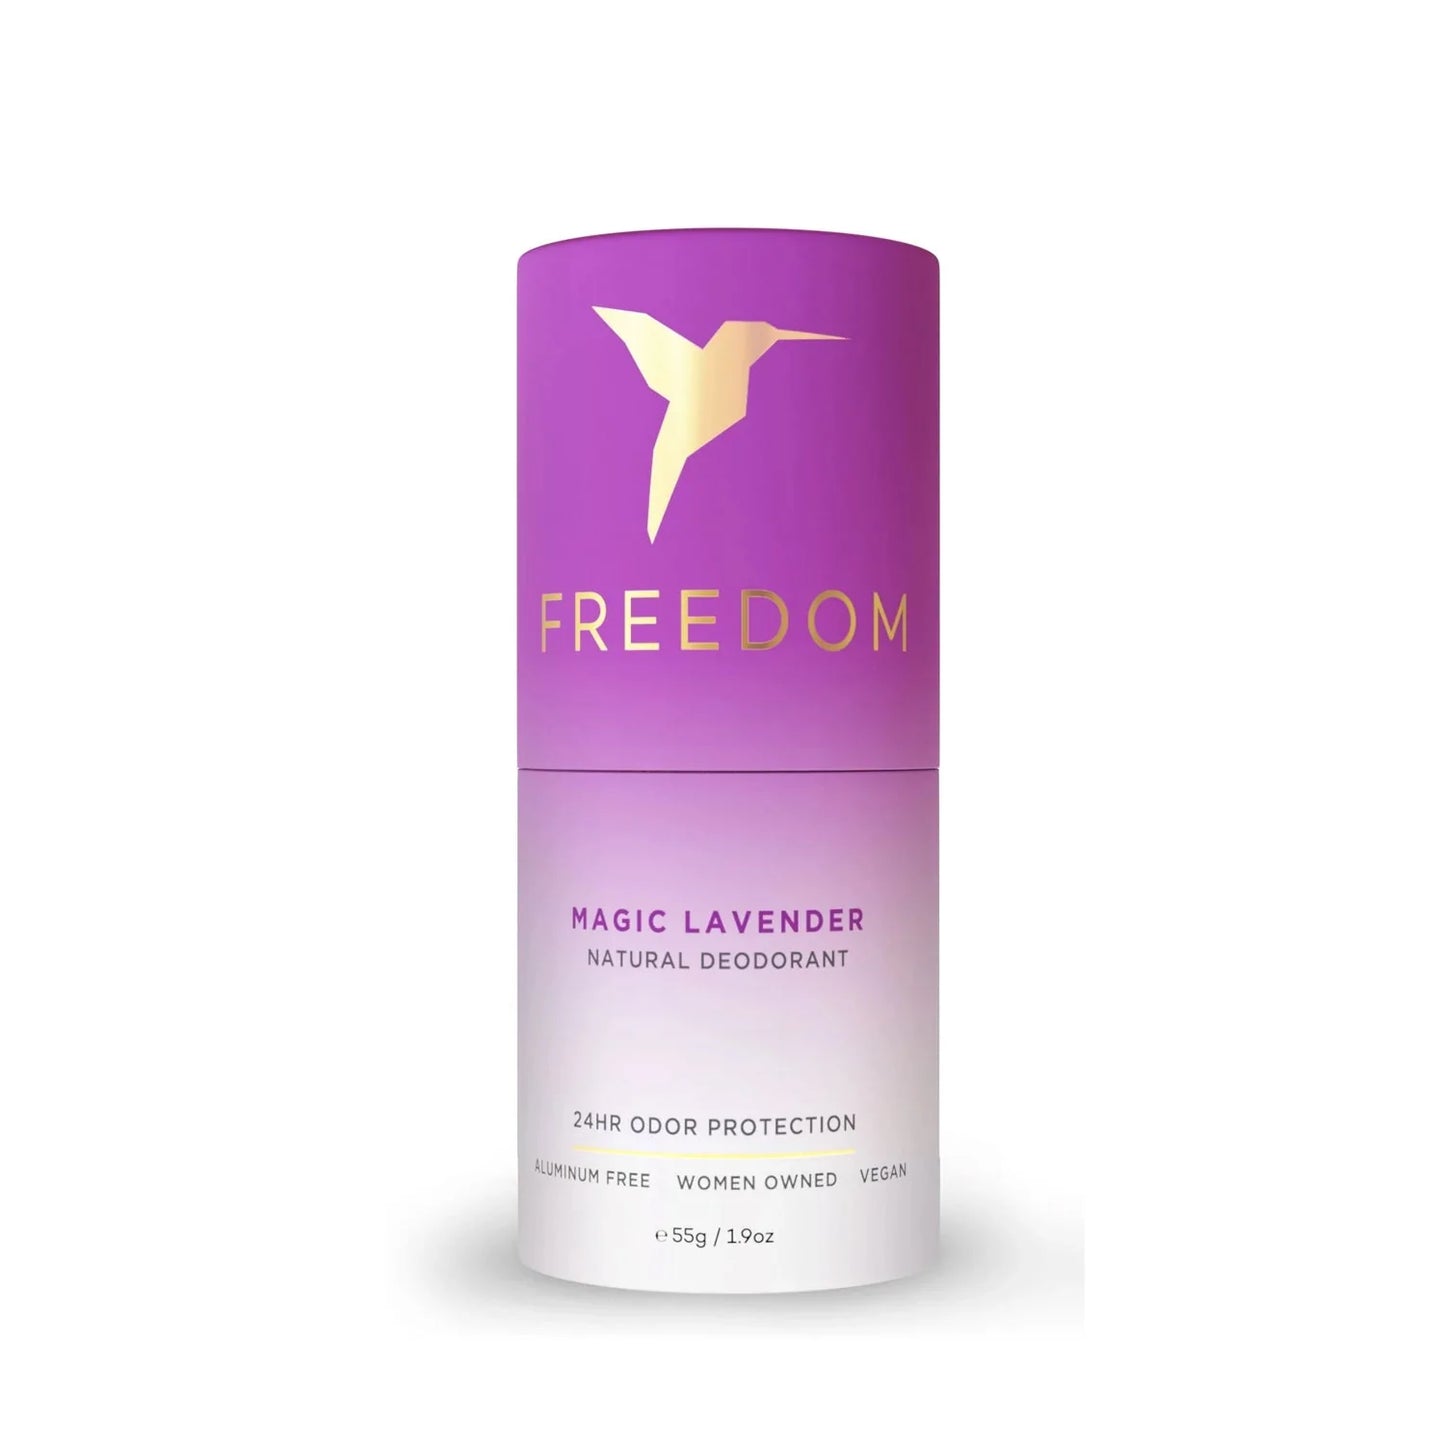 Freedom Magic Lavender Natural Deodorant